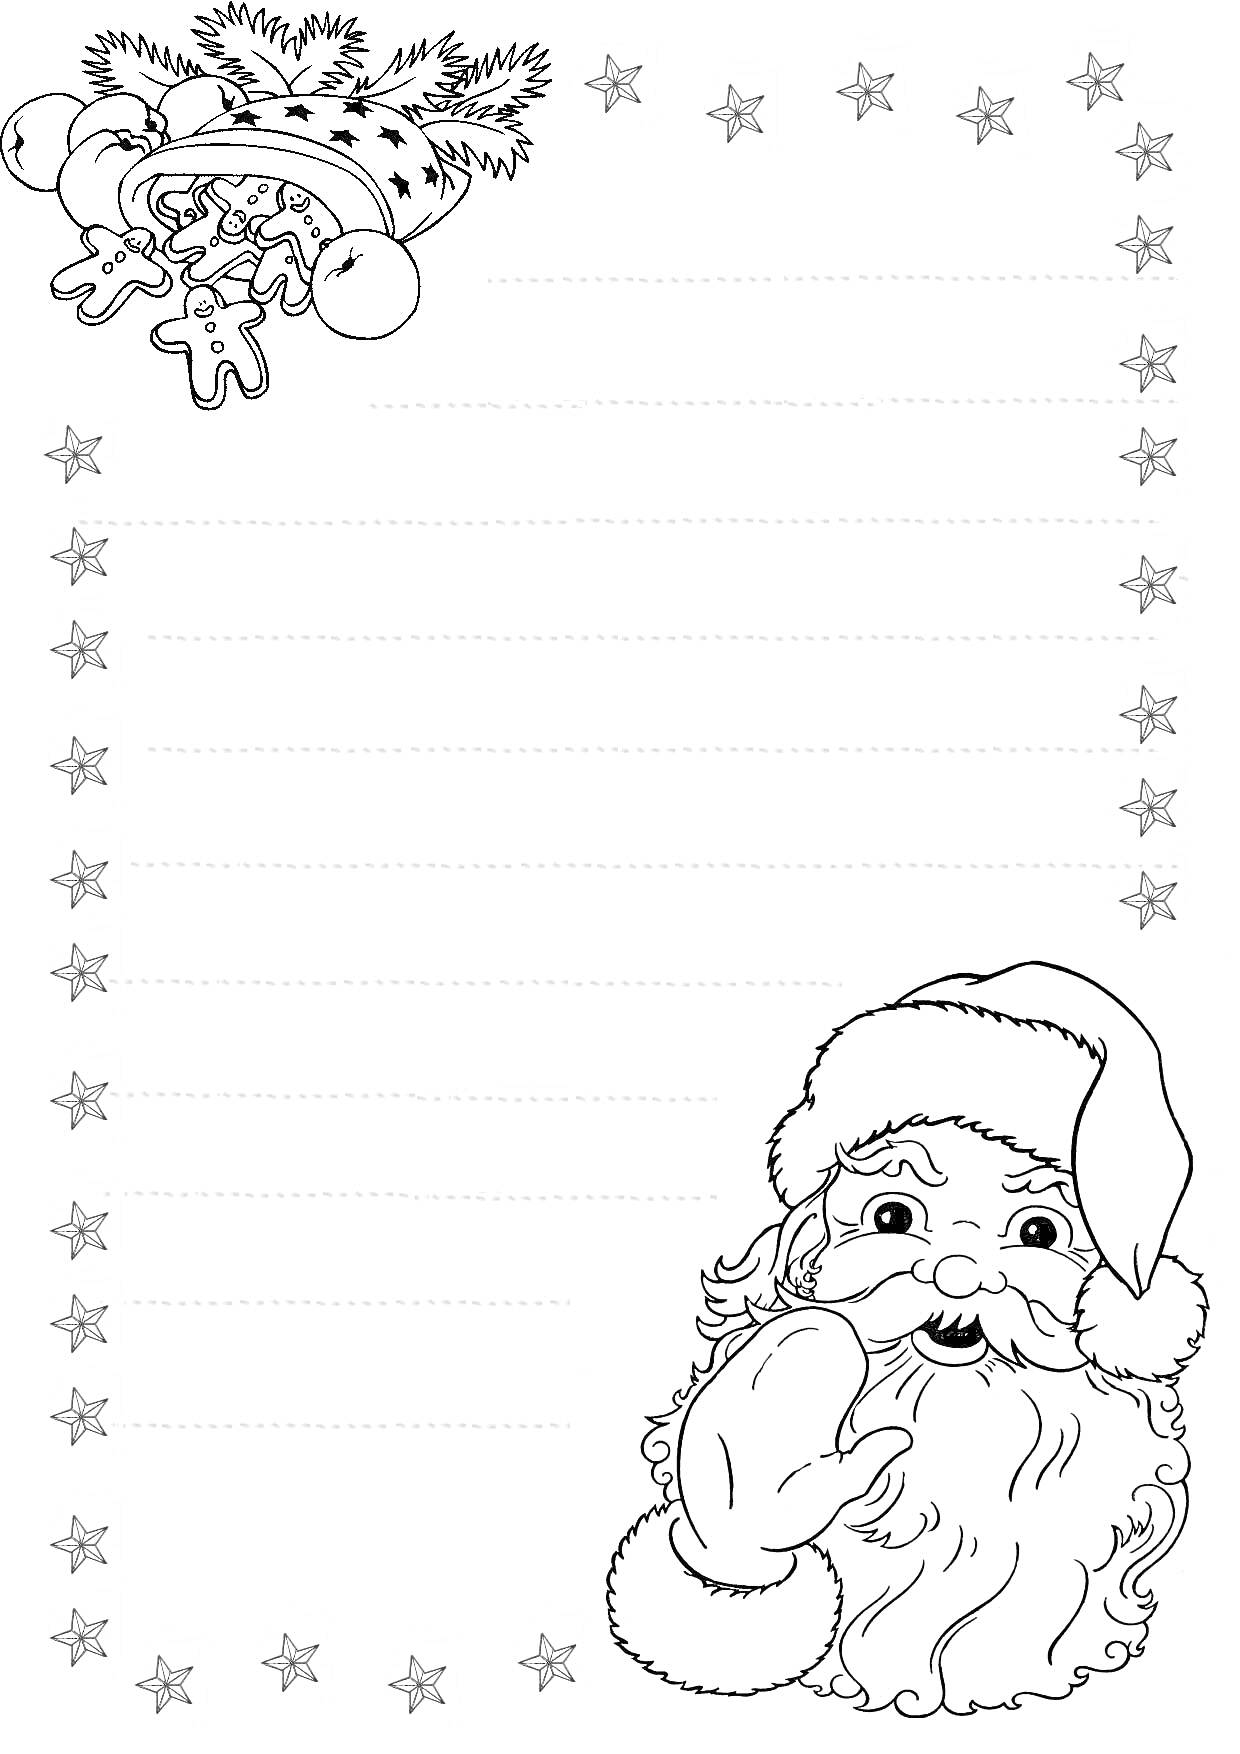 Раскраска Новогодняя раскраска с Дедом Морозом, ёлочными украшениями и рамкой из звёзд для письма